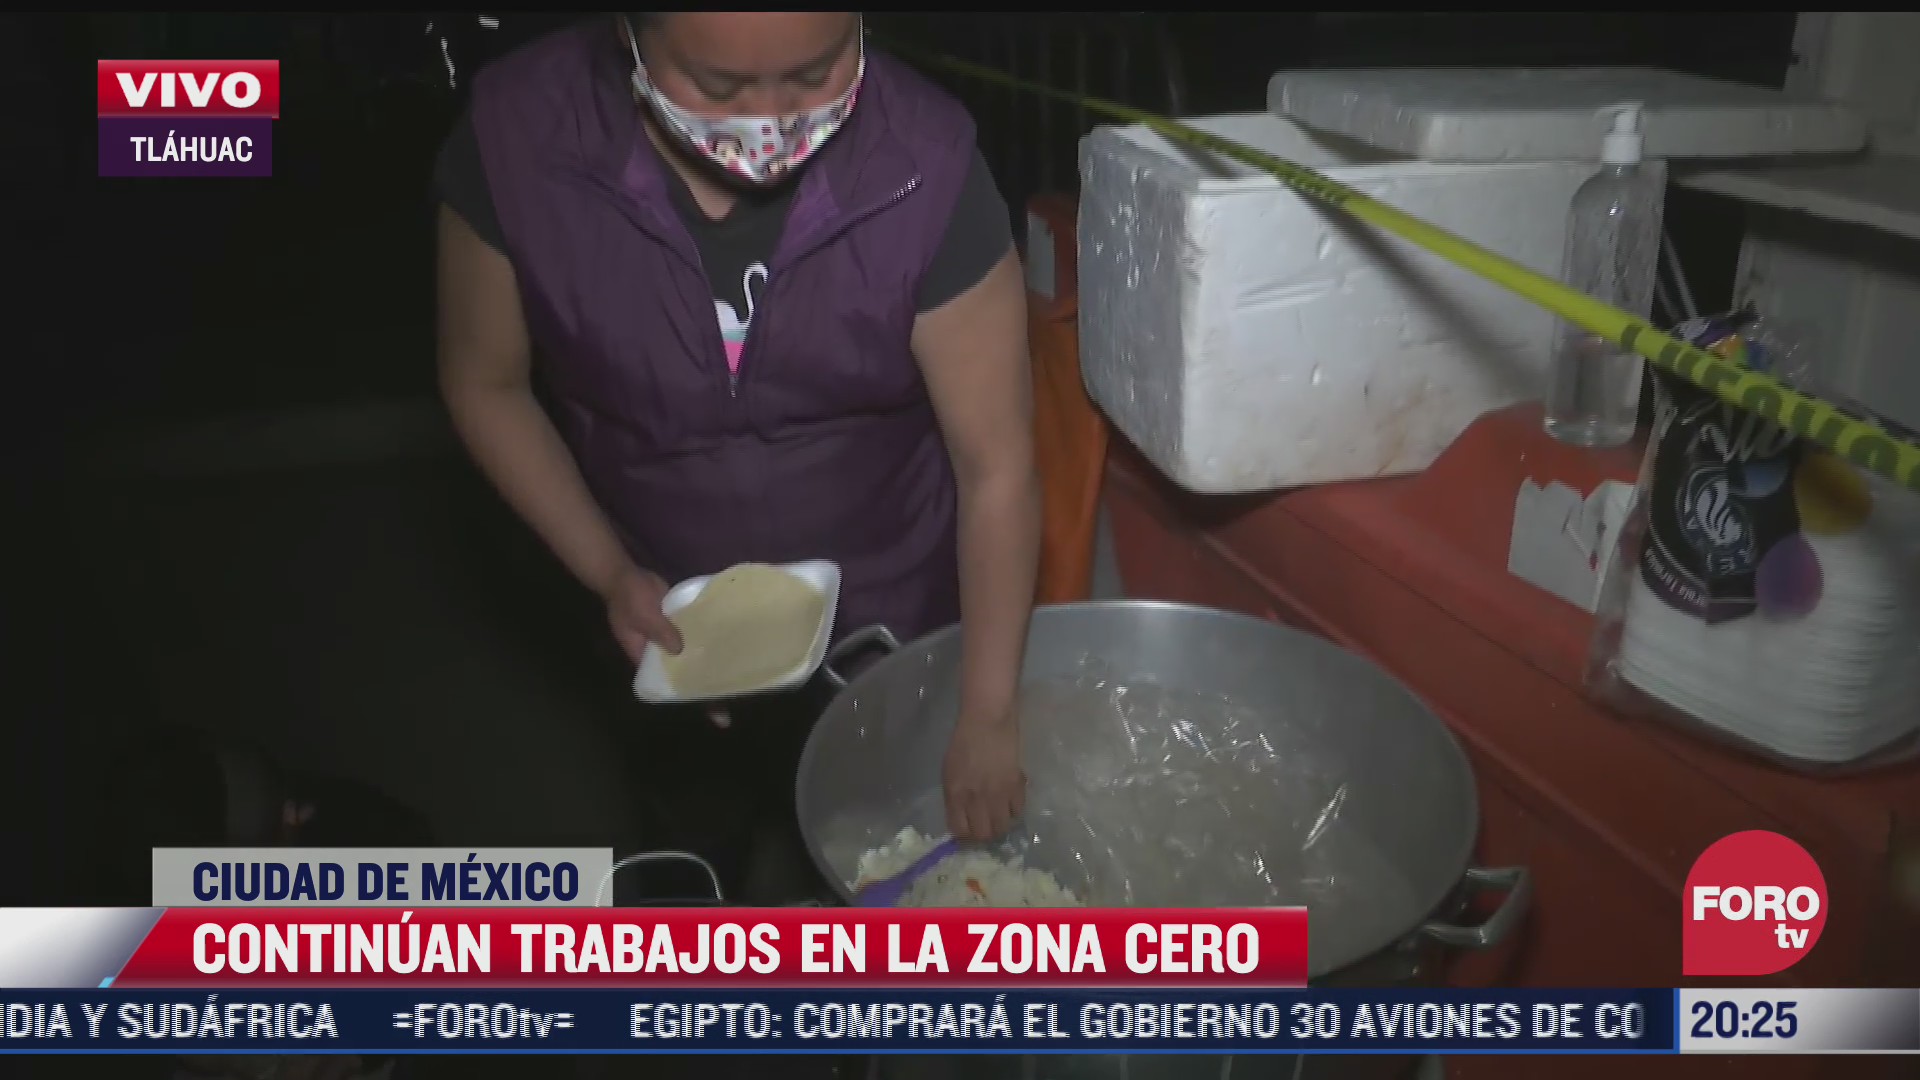 familia de tulyehualco muestra empatia llevando comida a trabajadores de la zona cero